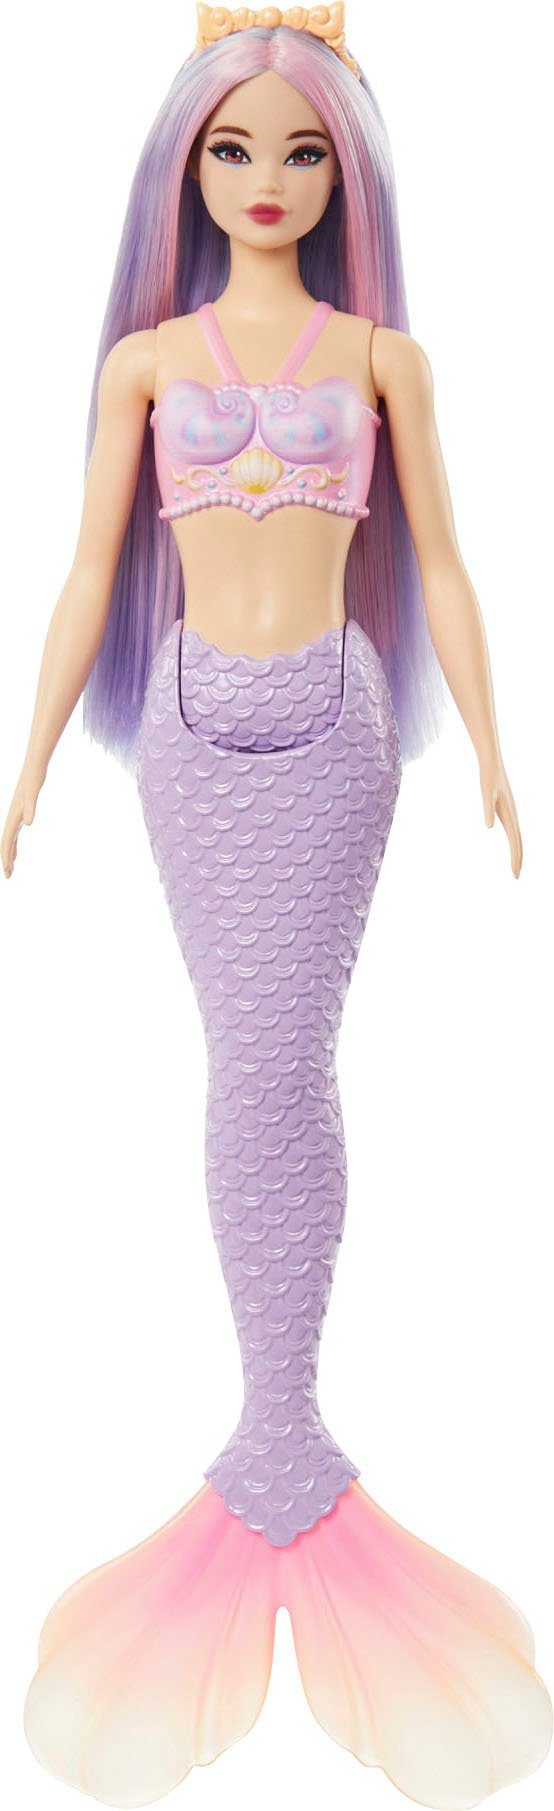 Barbie Meerjungfrauenpuppe Meerjungfrau, mit lilafarbenem Haar